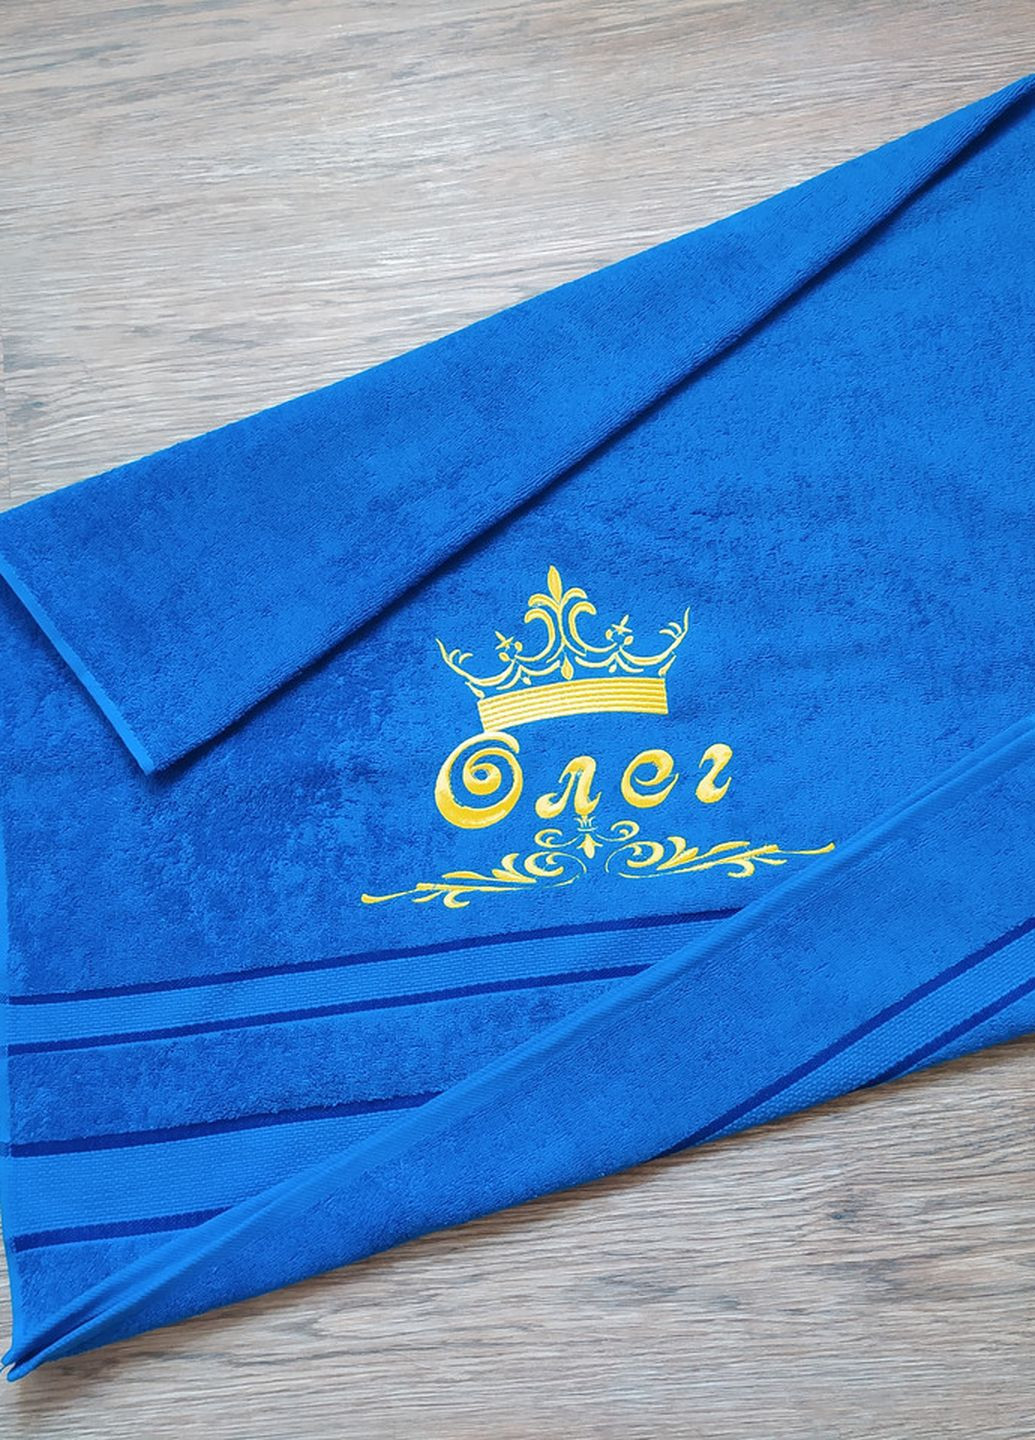 No Brand полотенце с именной вышивкой махровое банное 70*140 синий олег 00115 однотонный синий производство - Украина